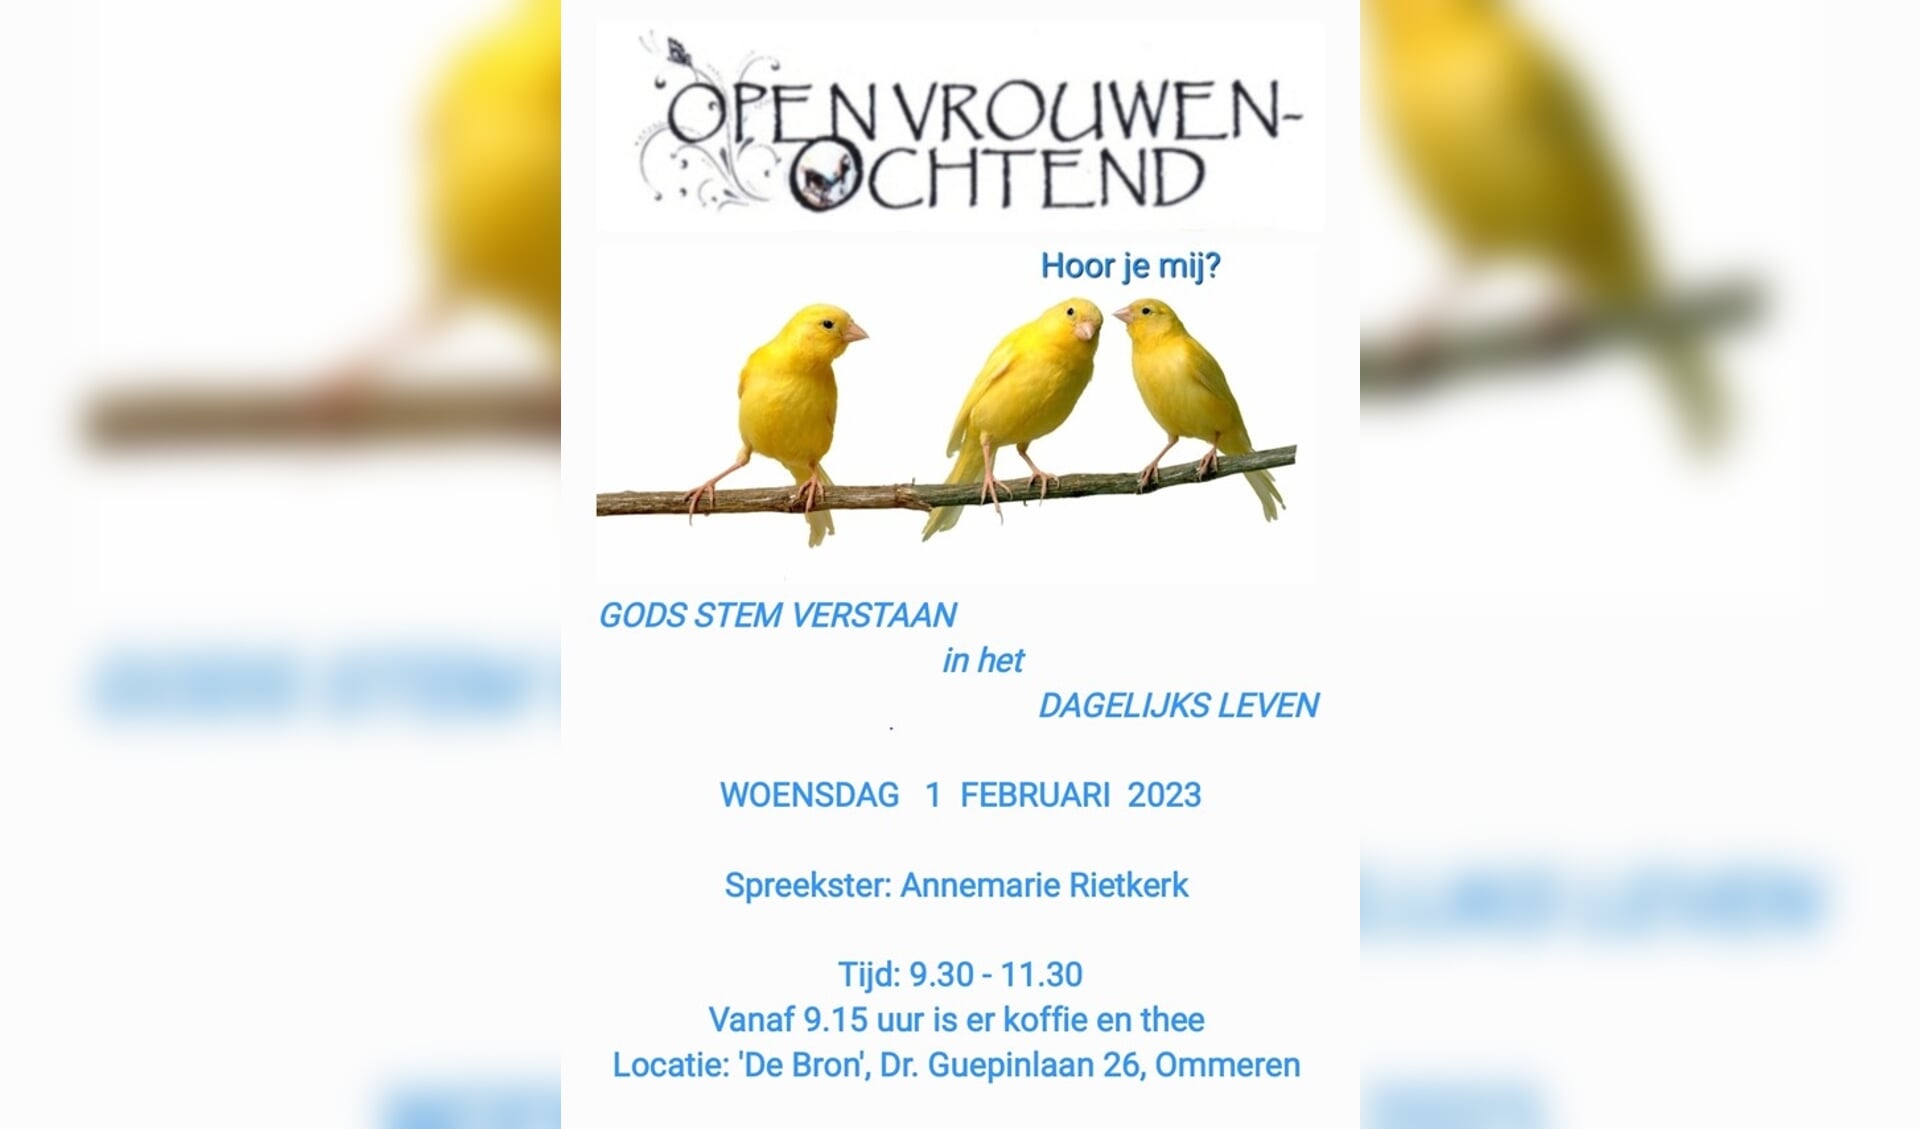 Uitnodiging Open Vrouwenochtend in Ommeren